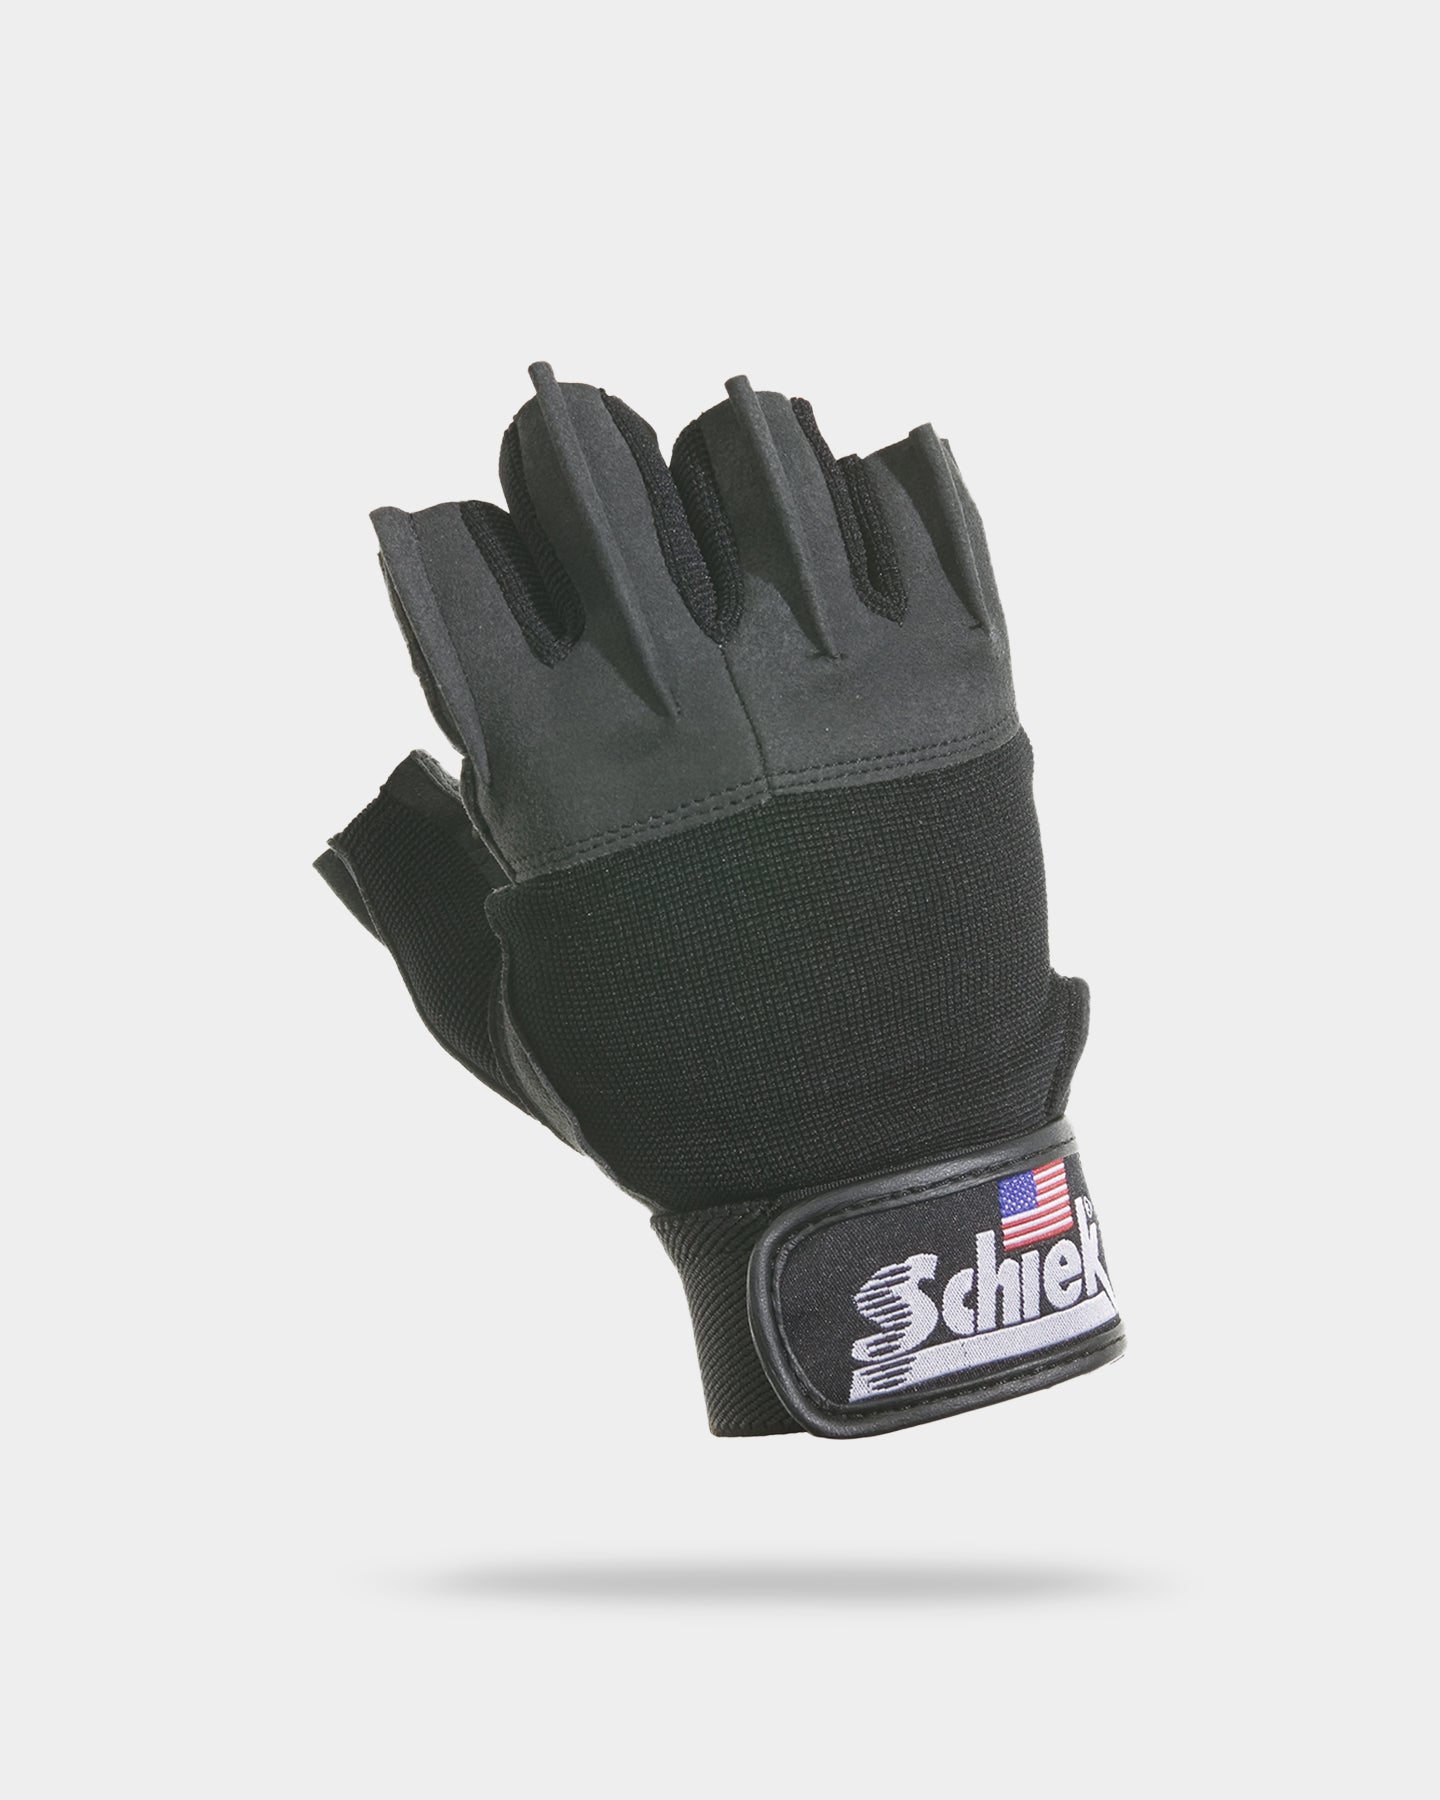 Image of Schiek Model 530 Lifting Gloves